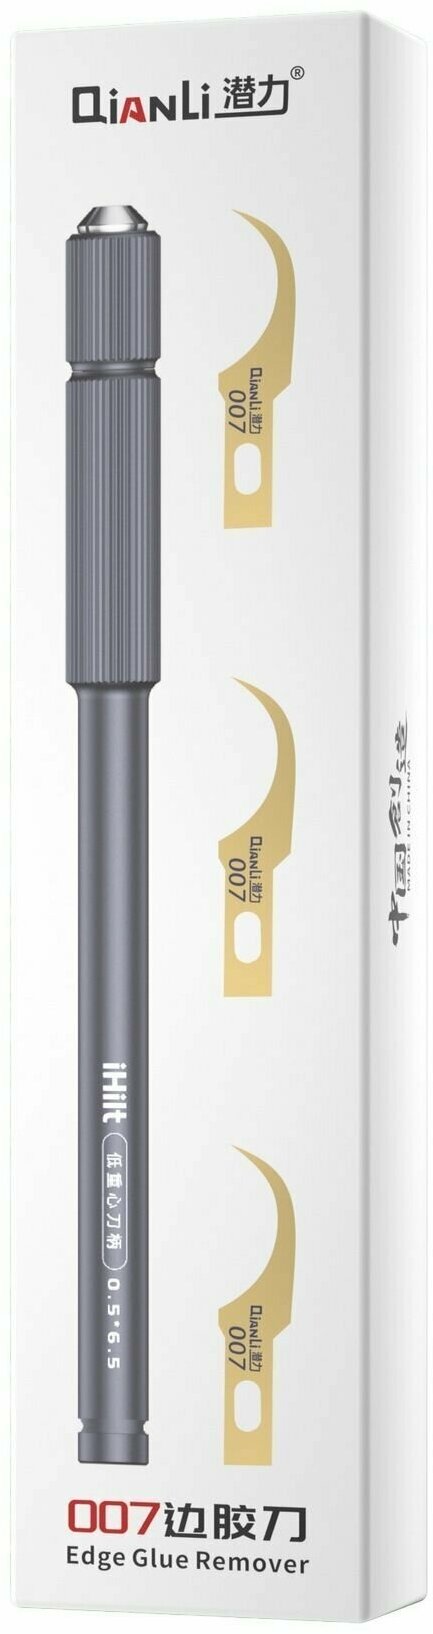 Нож QianLi iHilt 007 Edge Glue Remover со сменными лезвиями для снятия клея с микросхем - фотография № 1